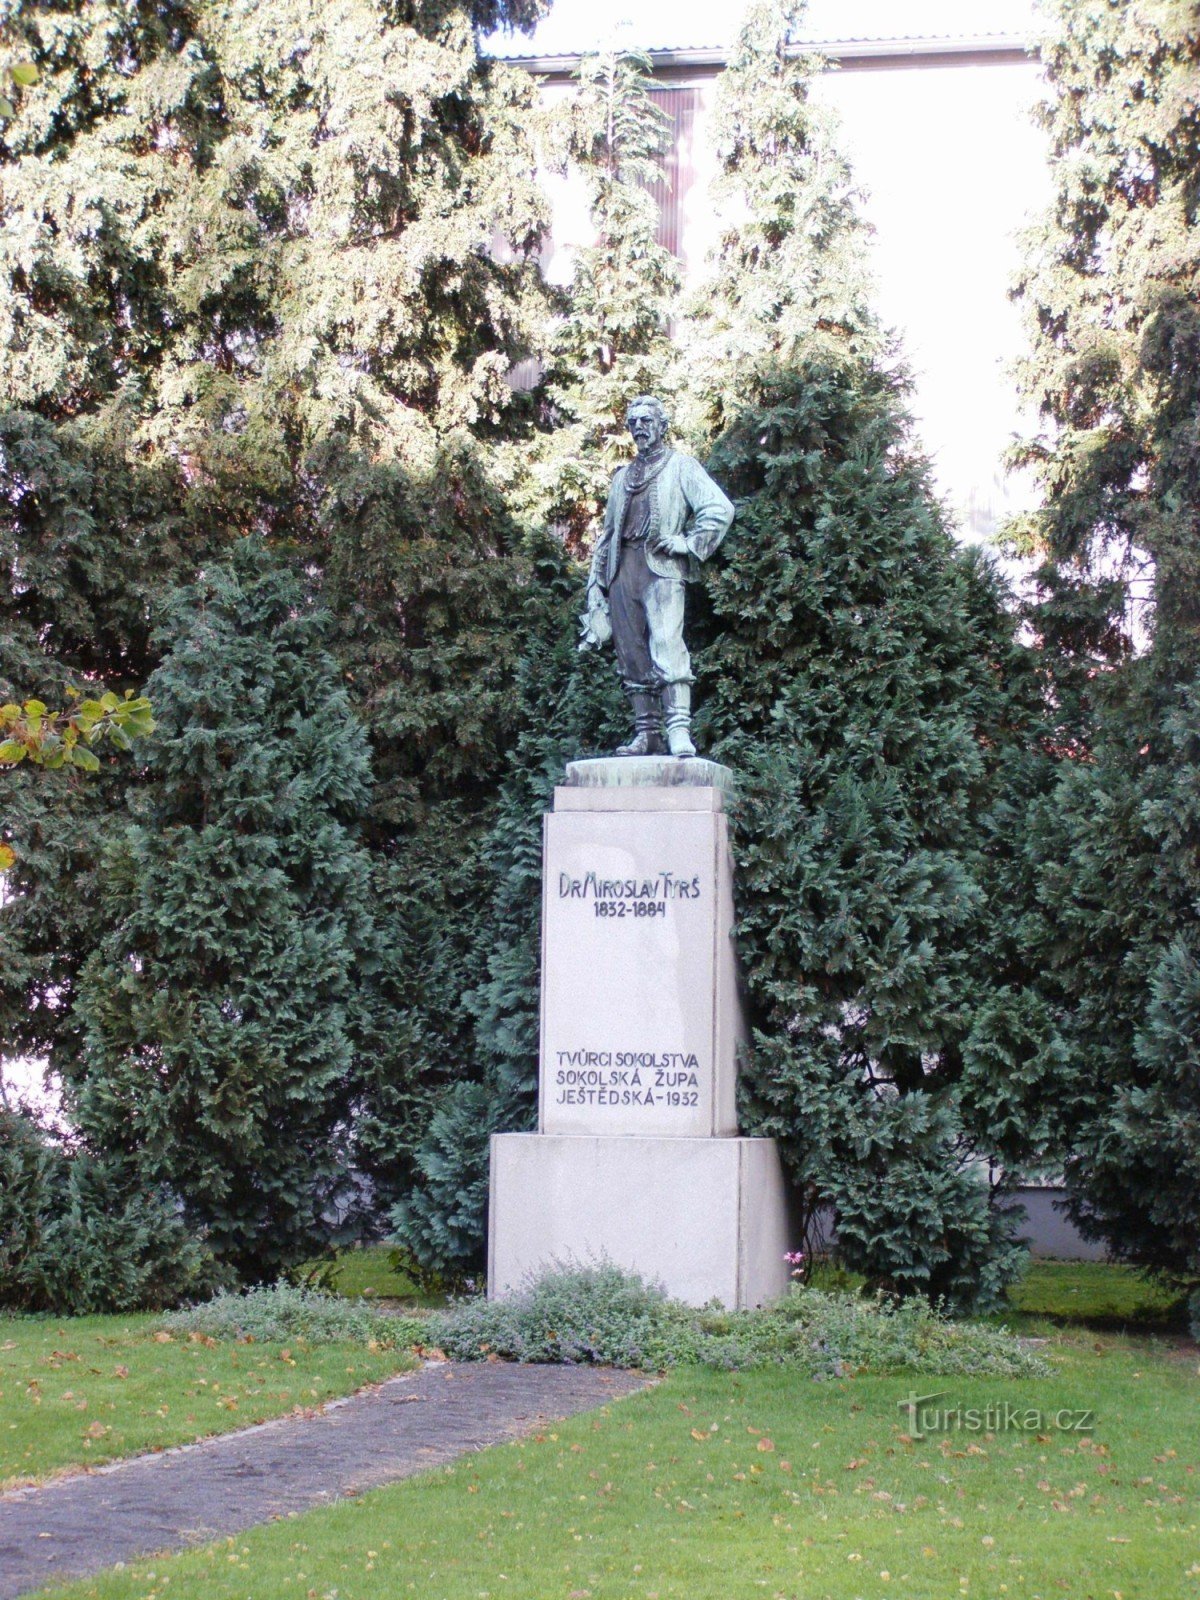 Turnov - monument al Dr. Miroslav Tyrš